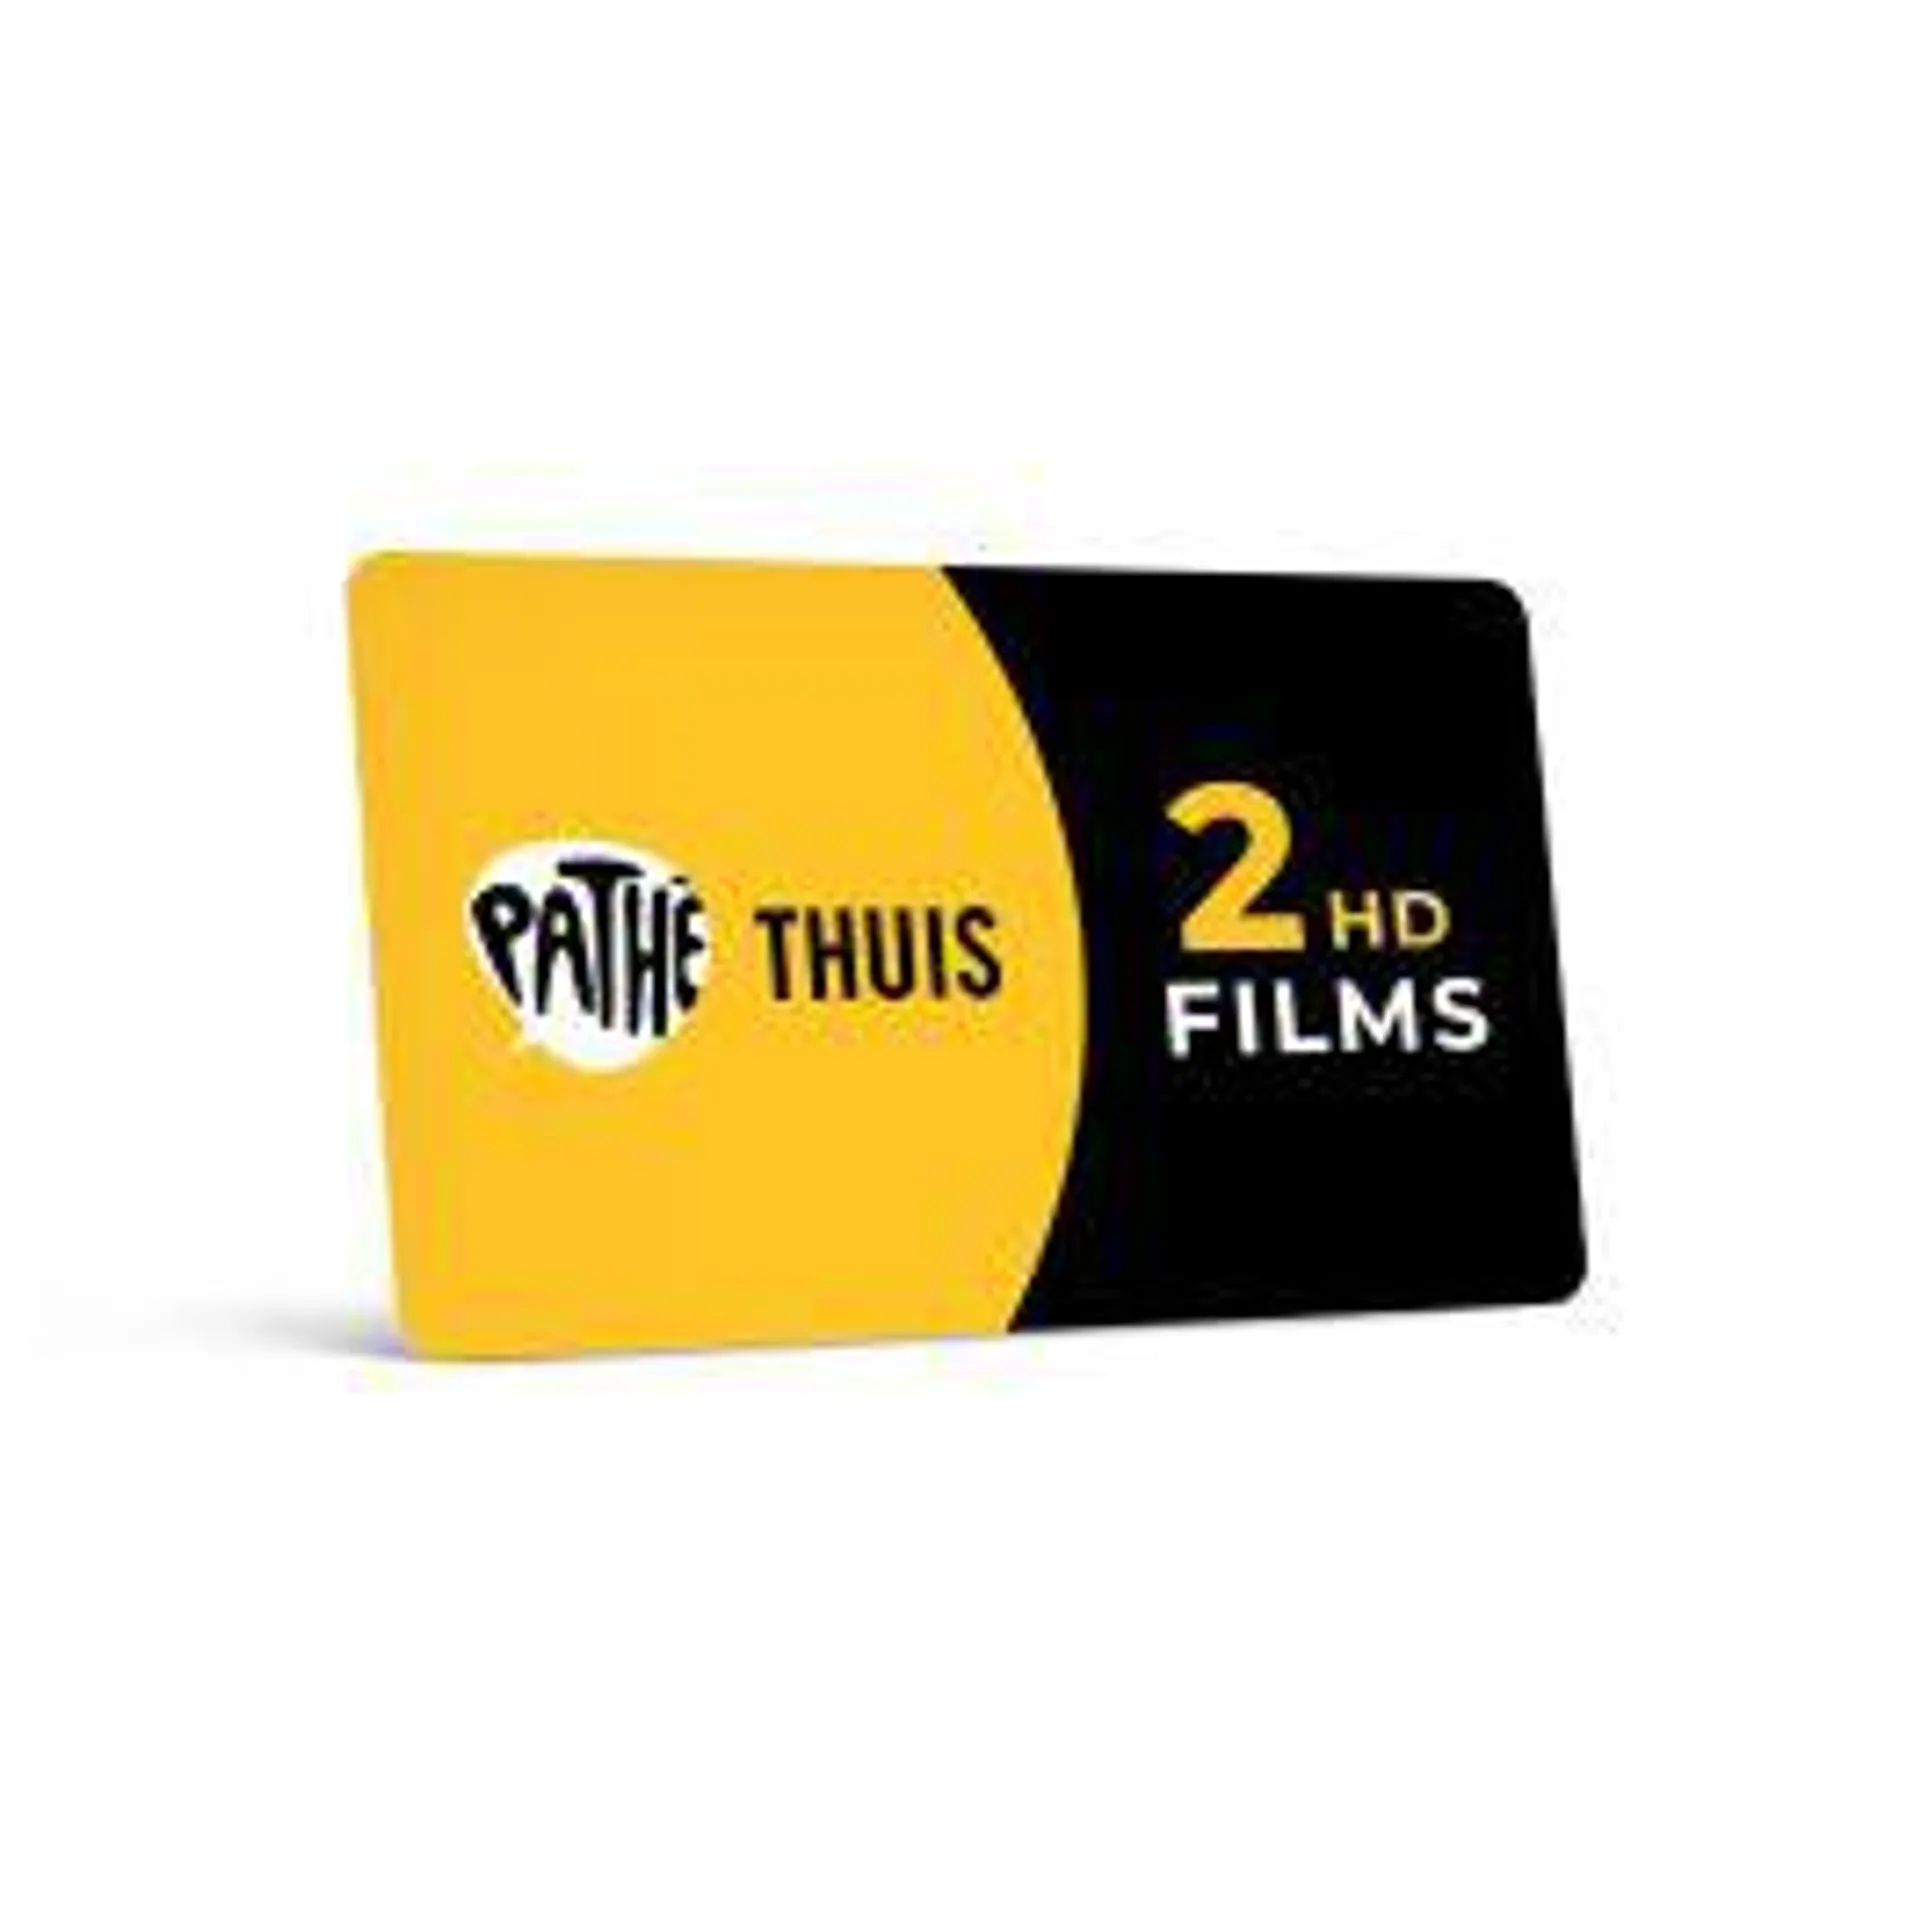 Pathé Thuis cadeaukaart 2x HD film